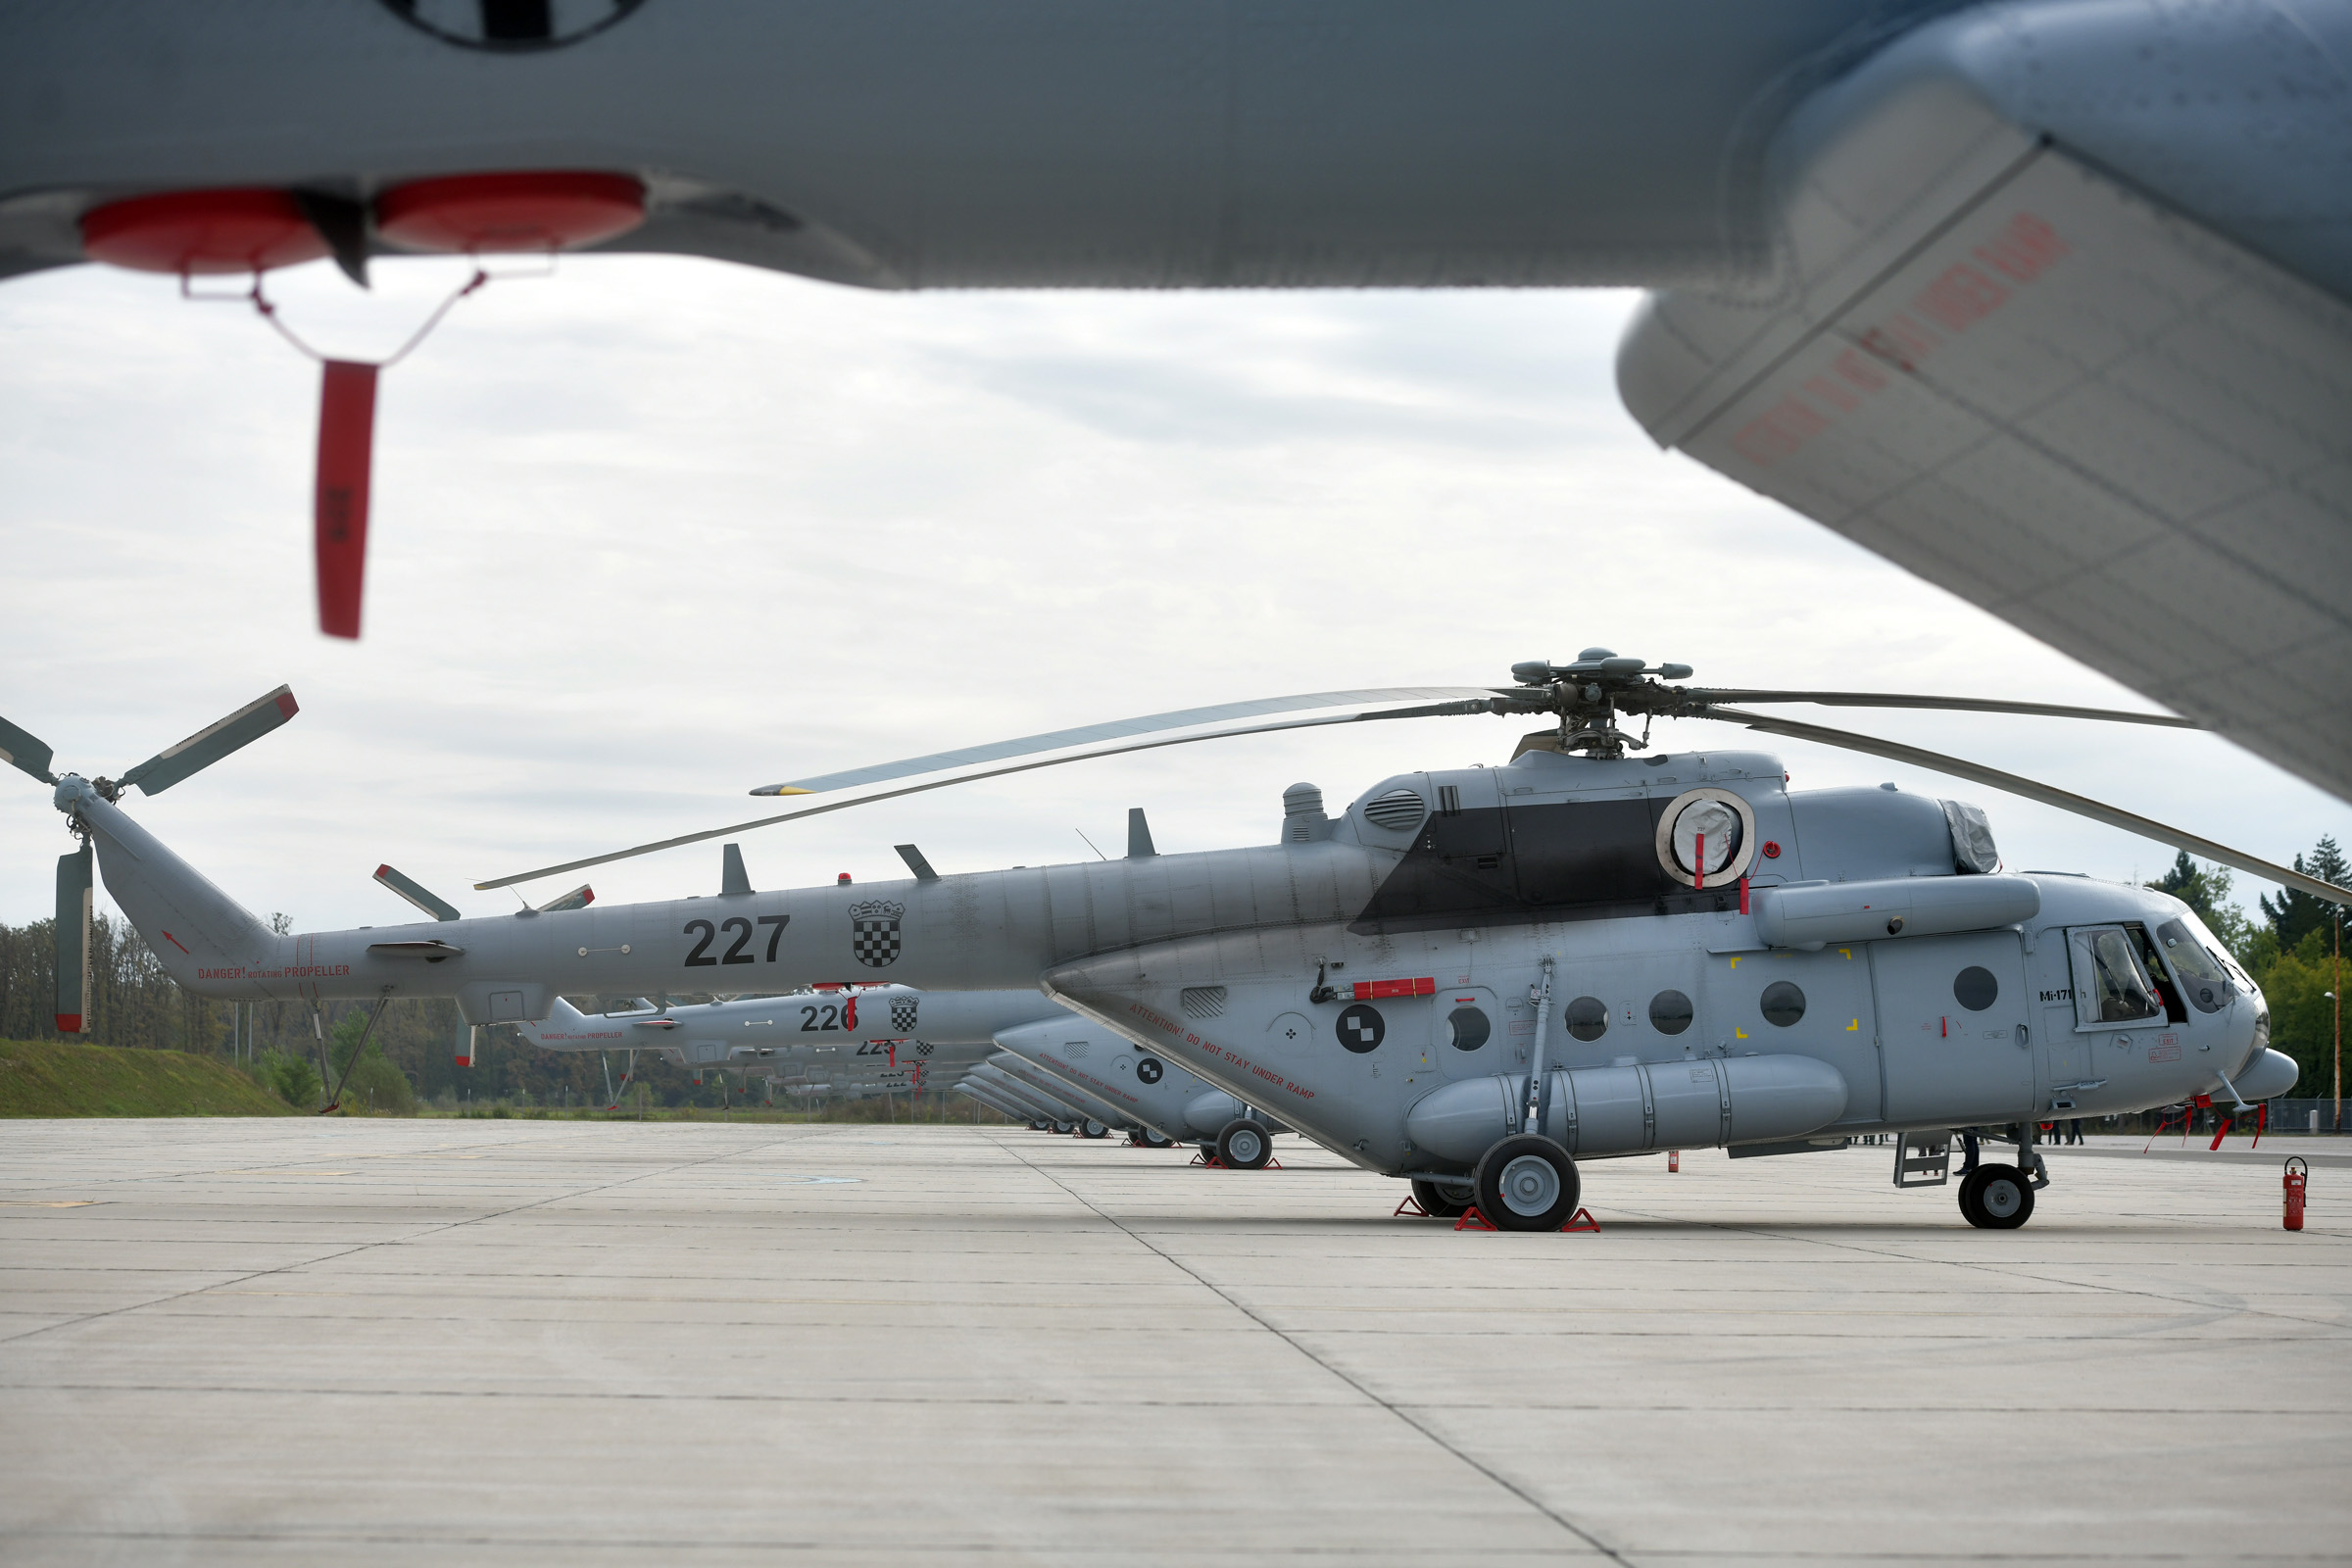 Održana prezentacija remontiranih helikoptera Mi-171Sh na Plesu